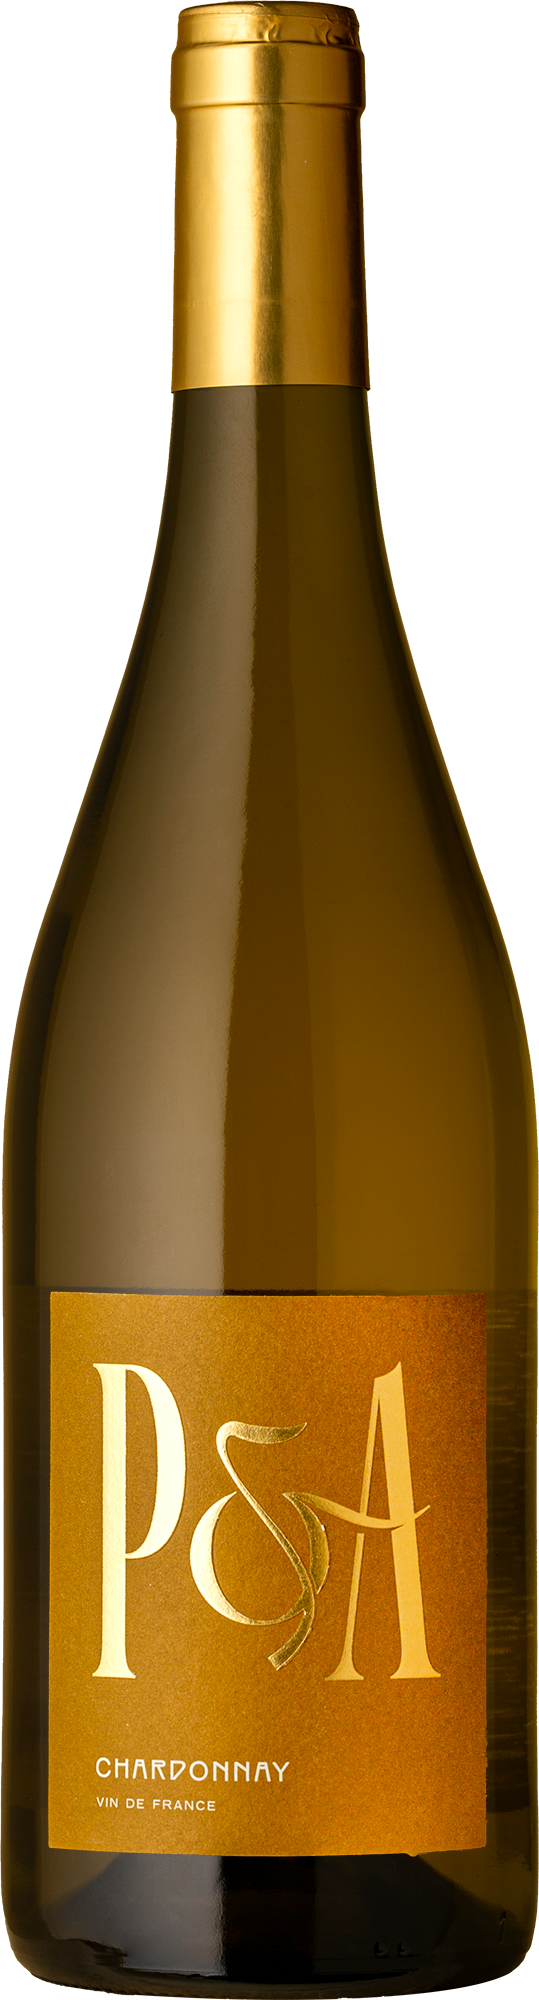 P&A Vin de France Chardonnay 2021